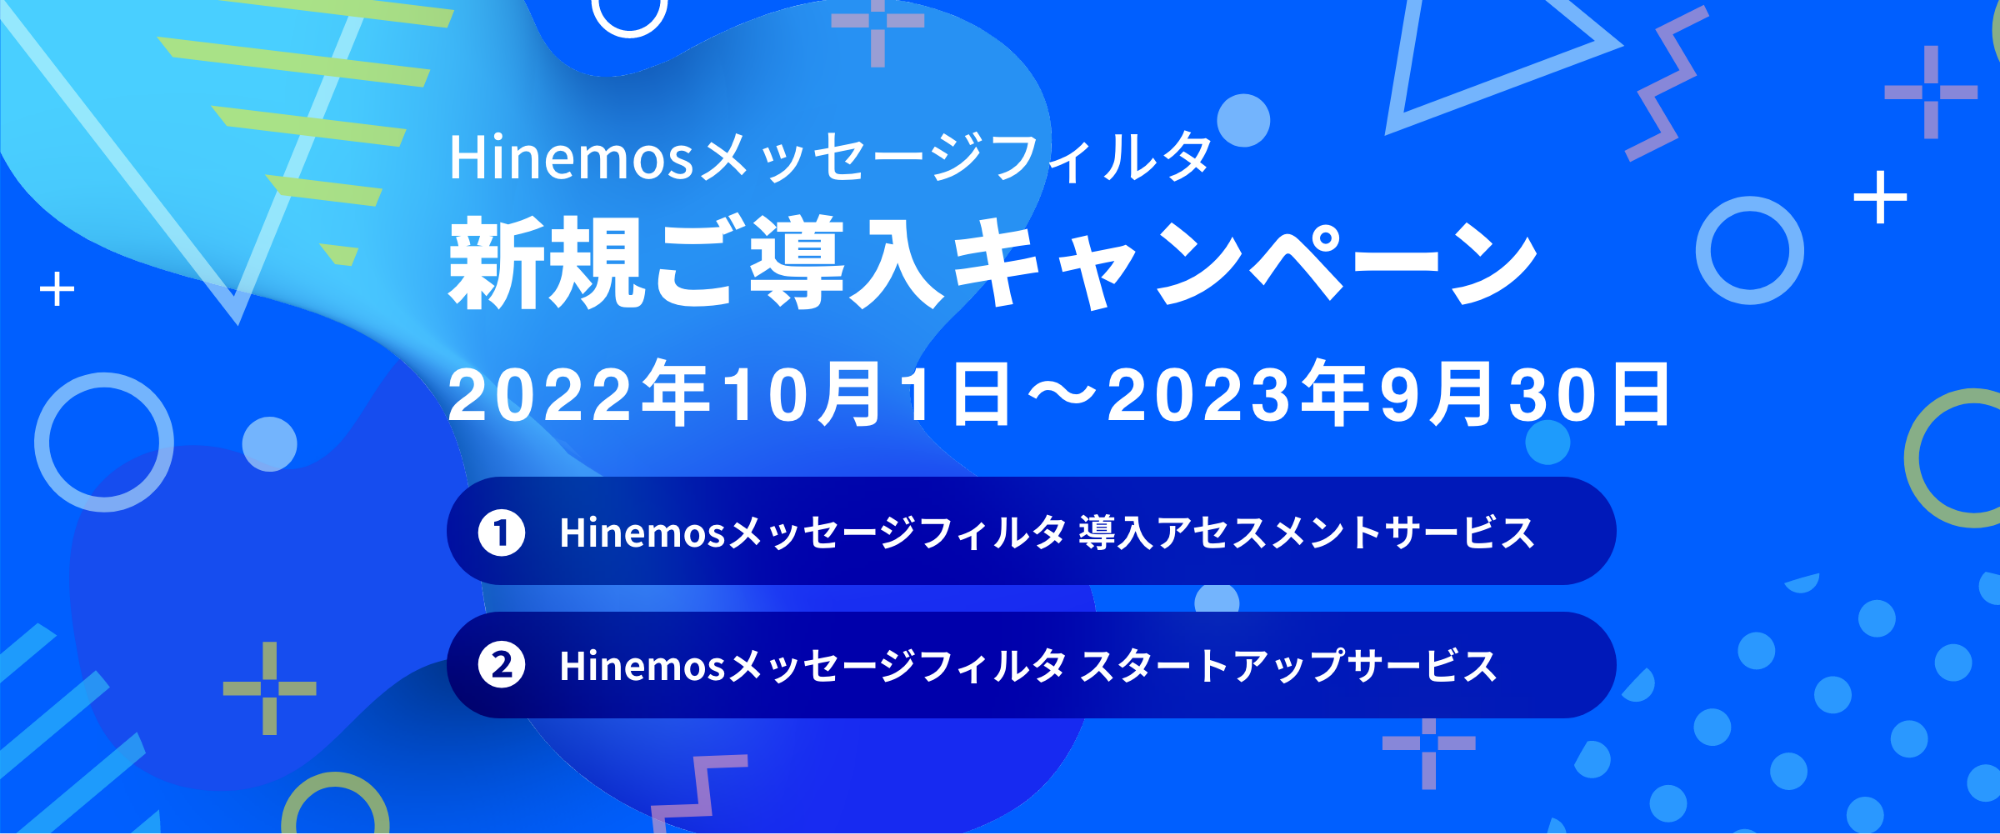 Hinemosメッセージフィルタ新規ご導入キャンペーン 2022年10月1日〜2023年9月30日